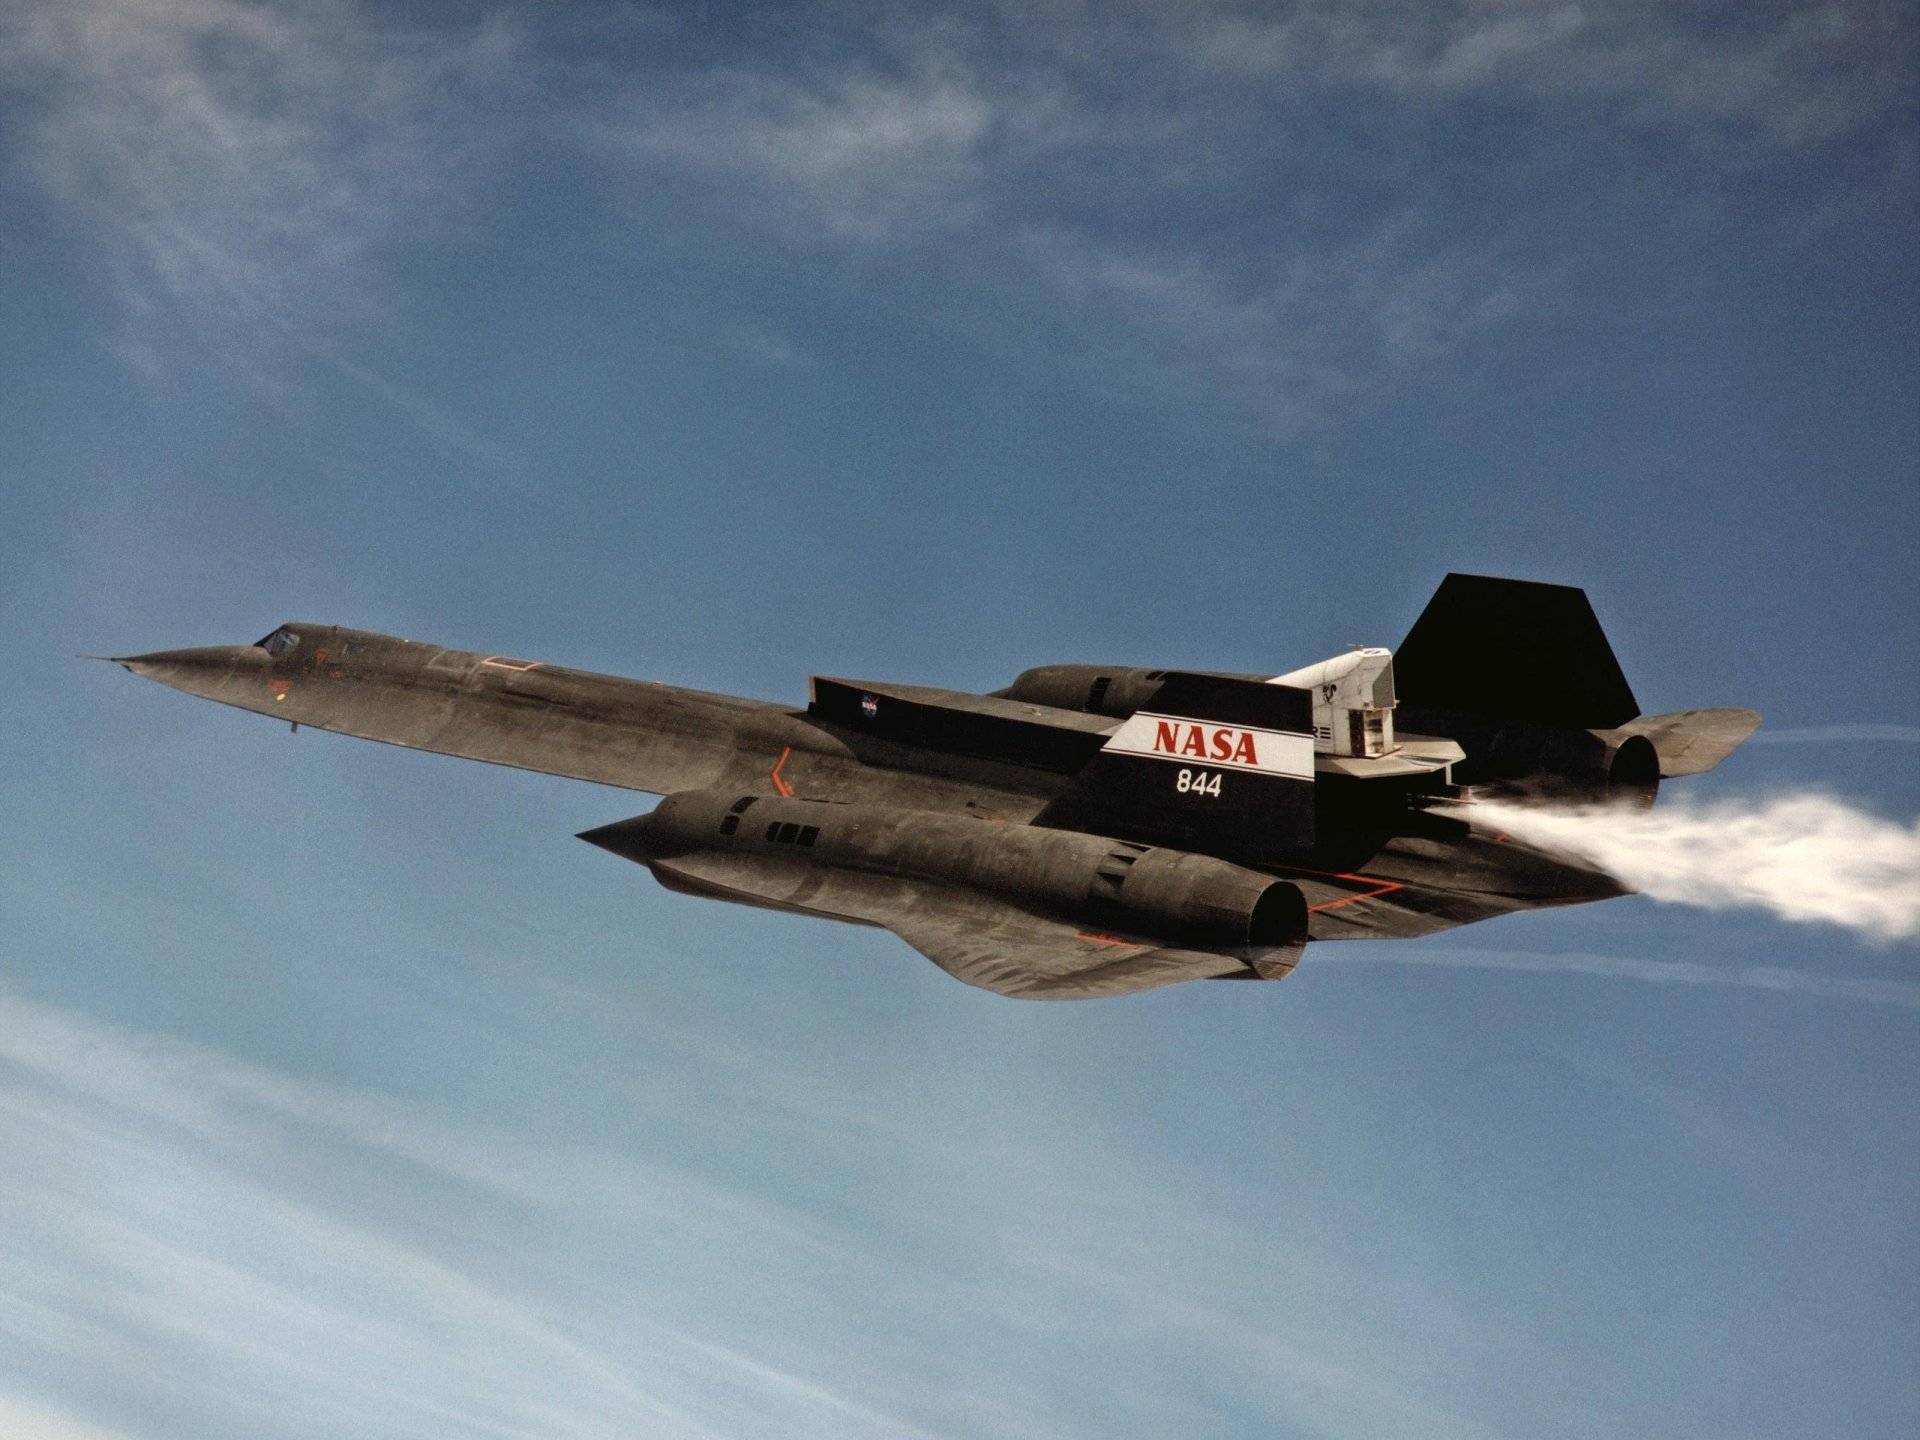 原创两段小故事告诉你美军的sr71黑鸟侦察机飞的有多快多高